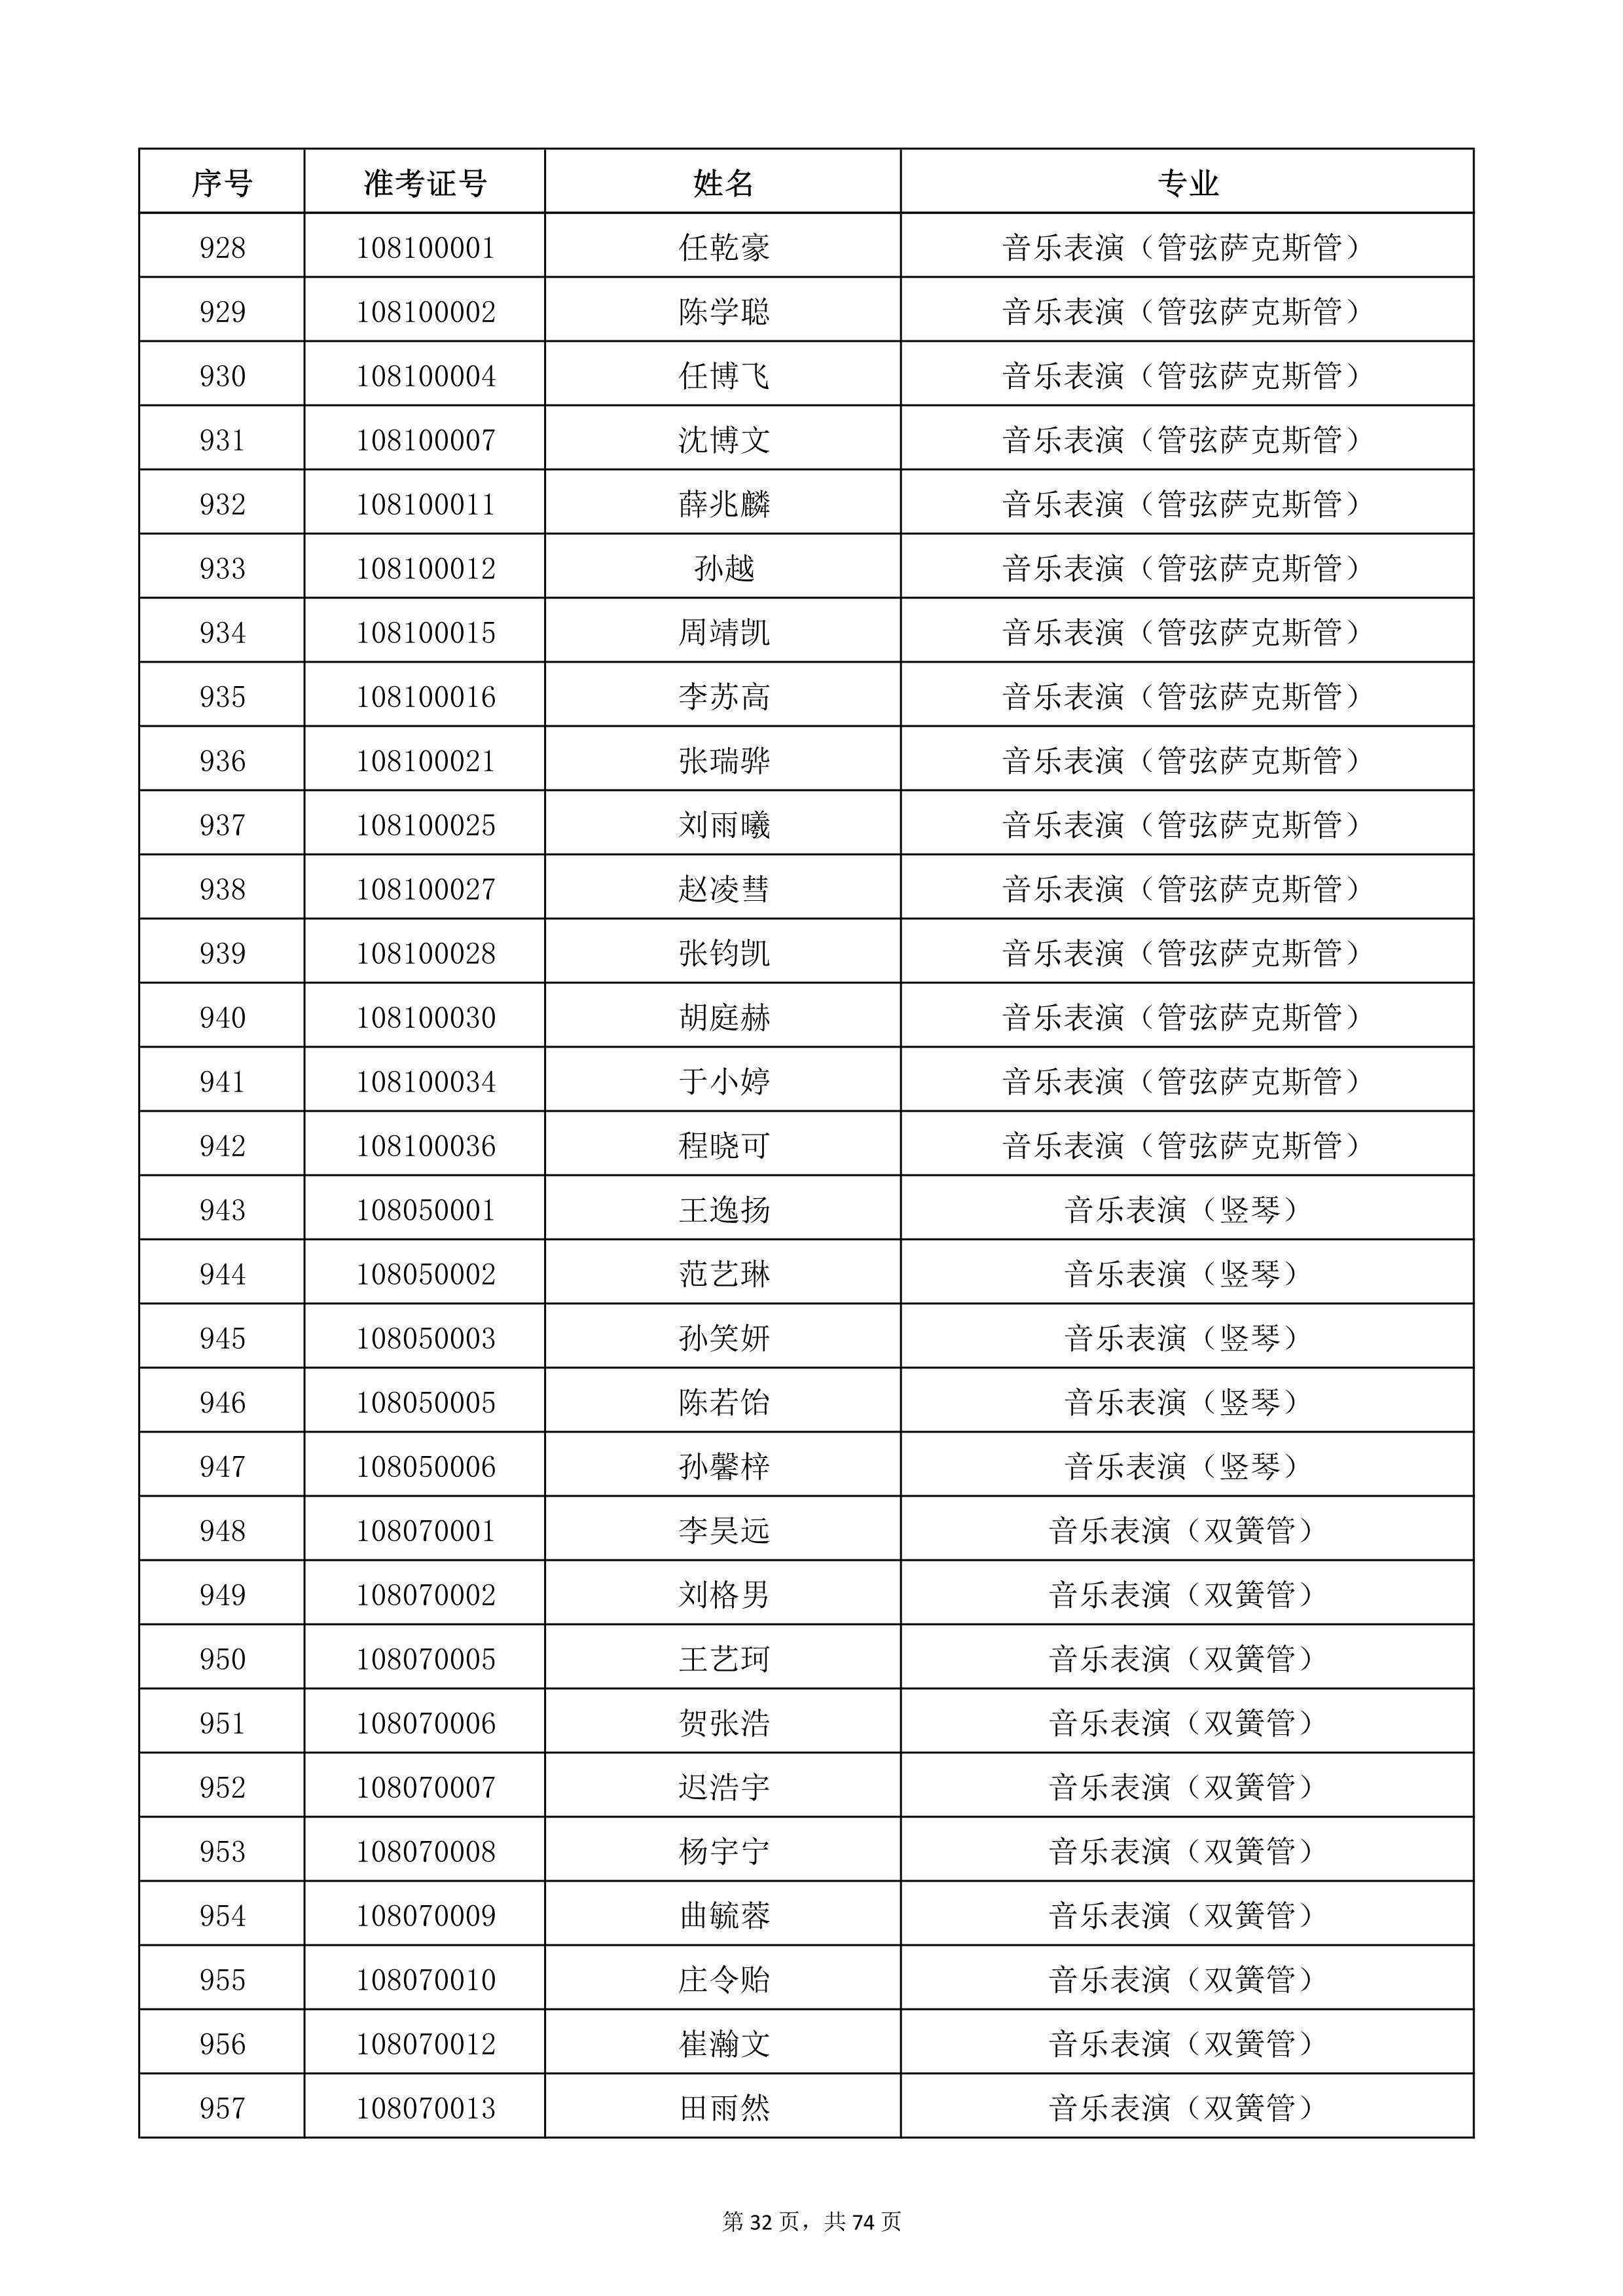 天津音乐学院2022年本科招生考试复试名单_32.jpg